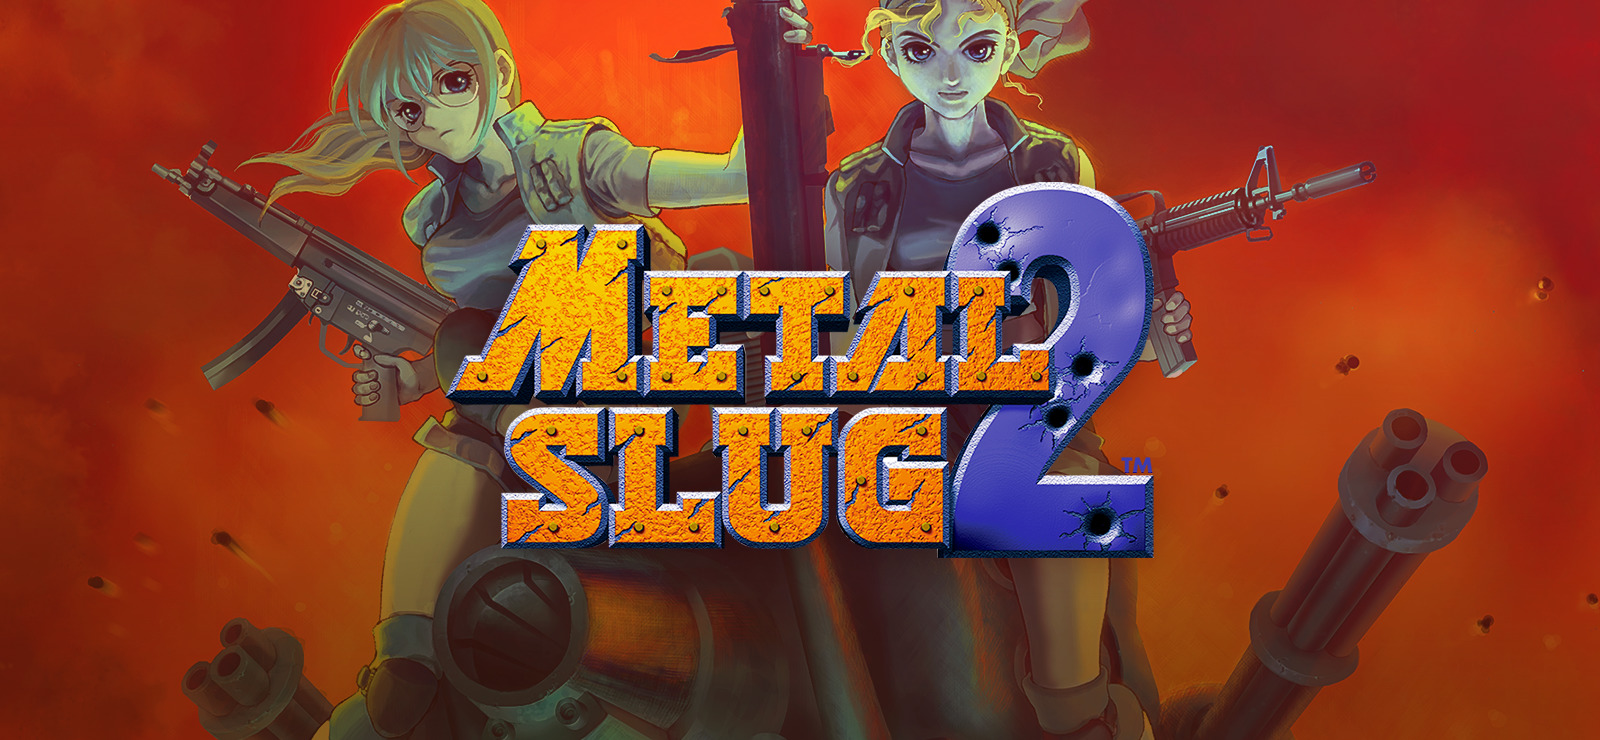 metal slug tactics platforms